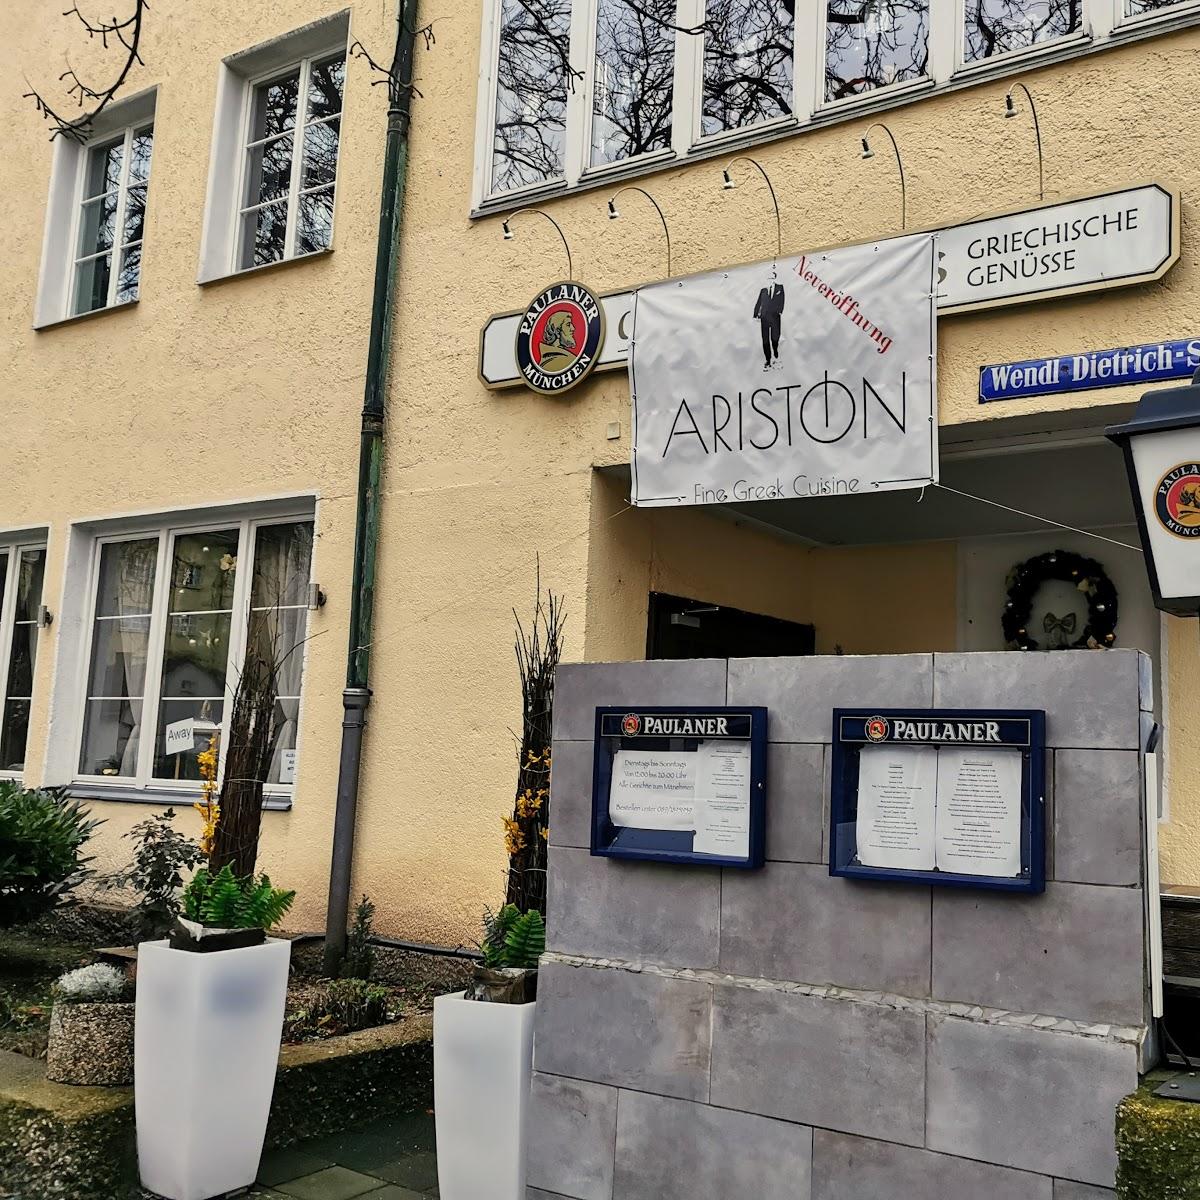 Restaurant "Ariston" in München